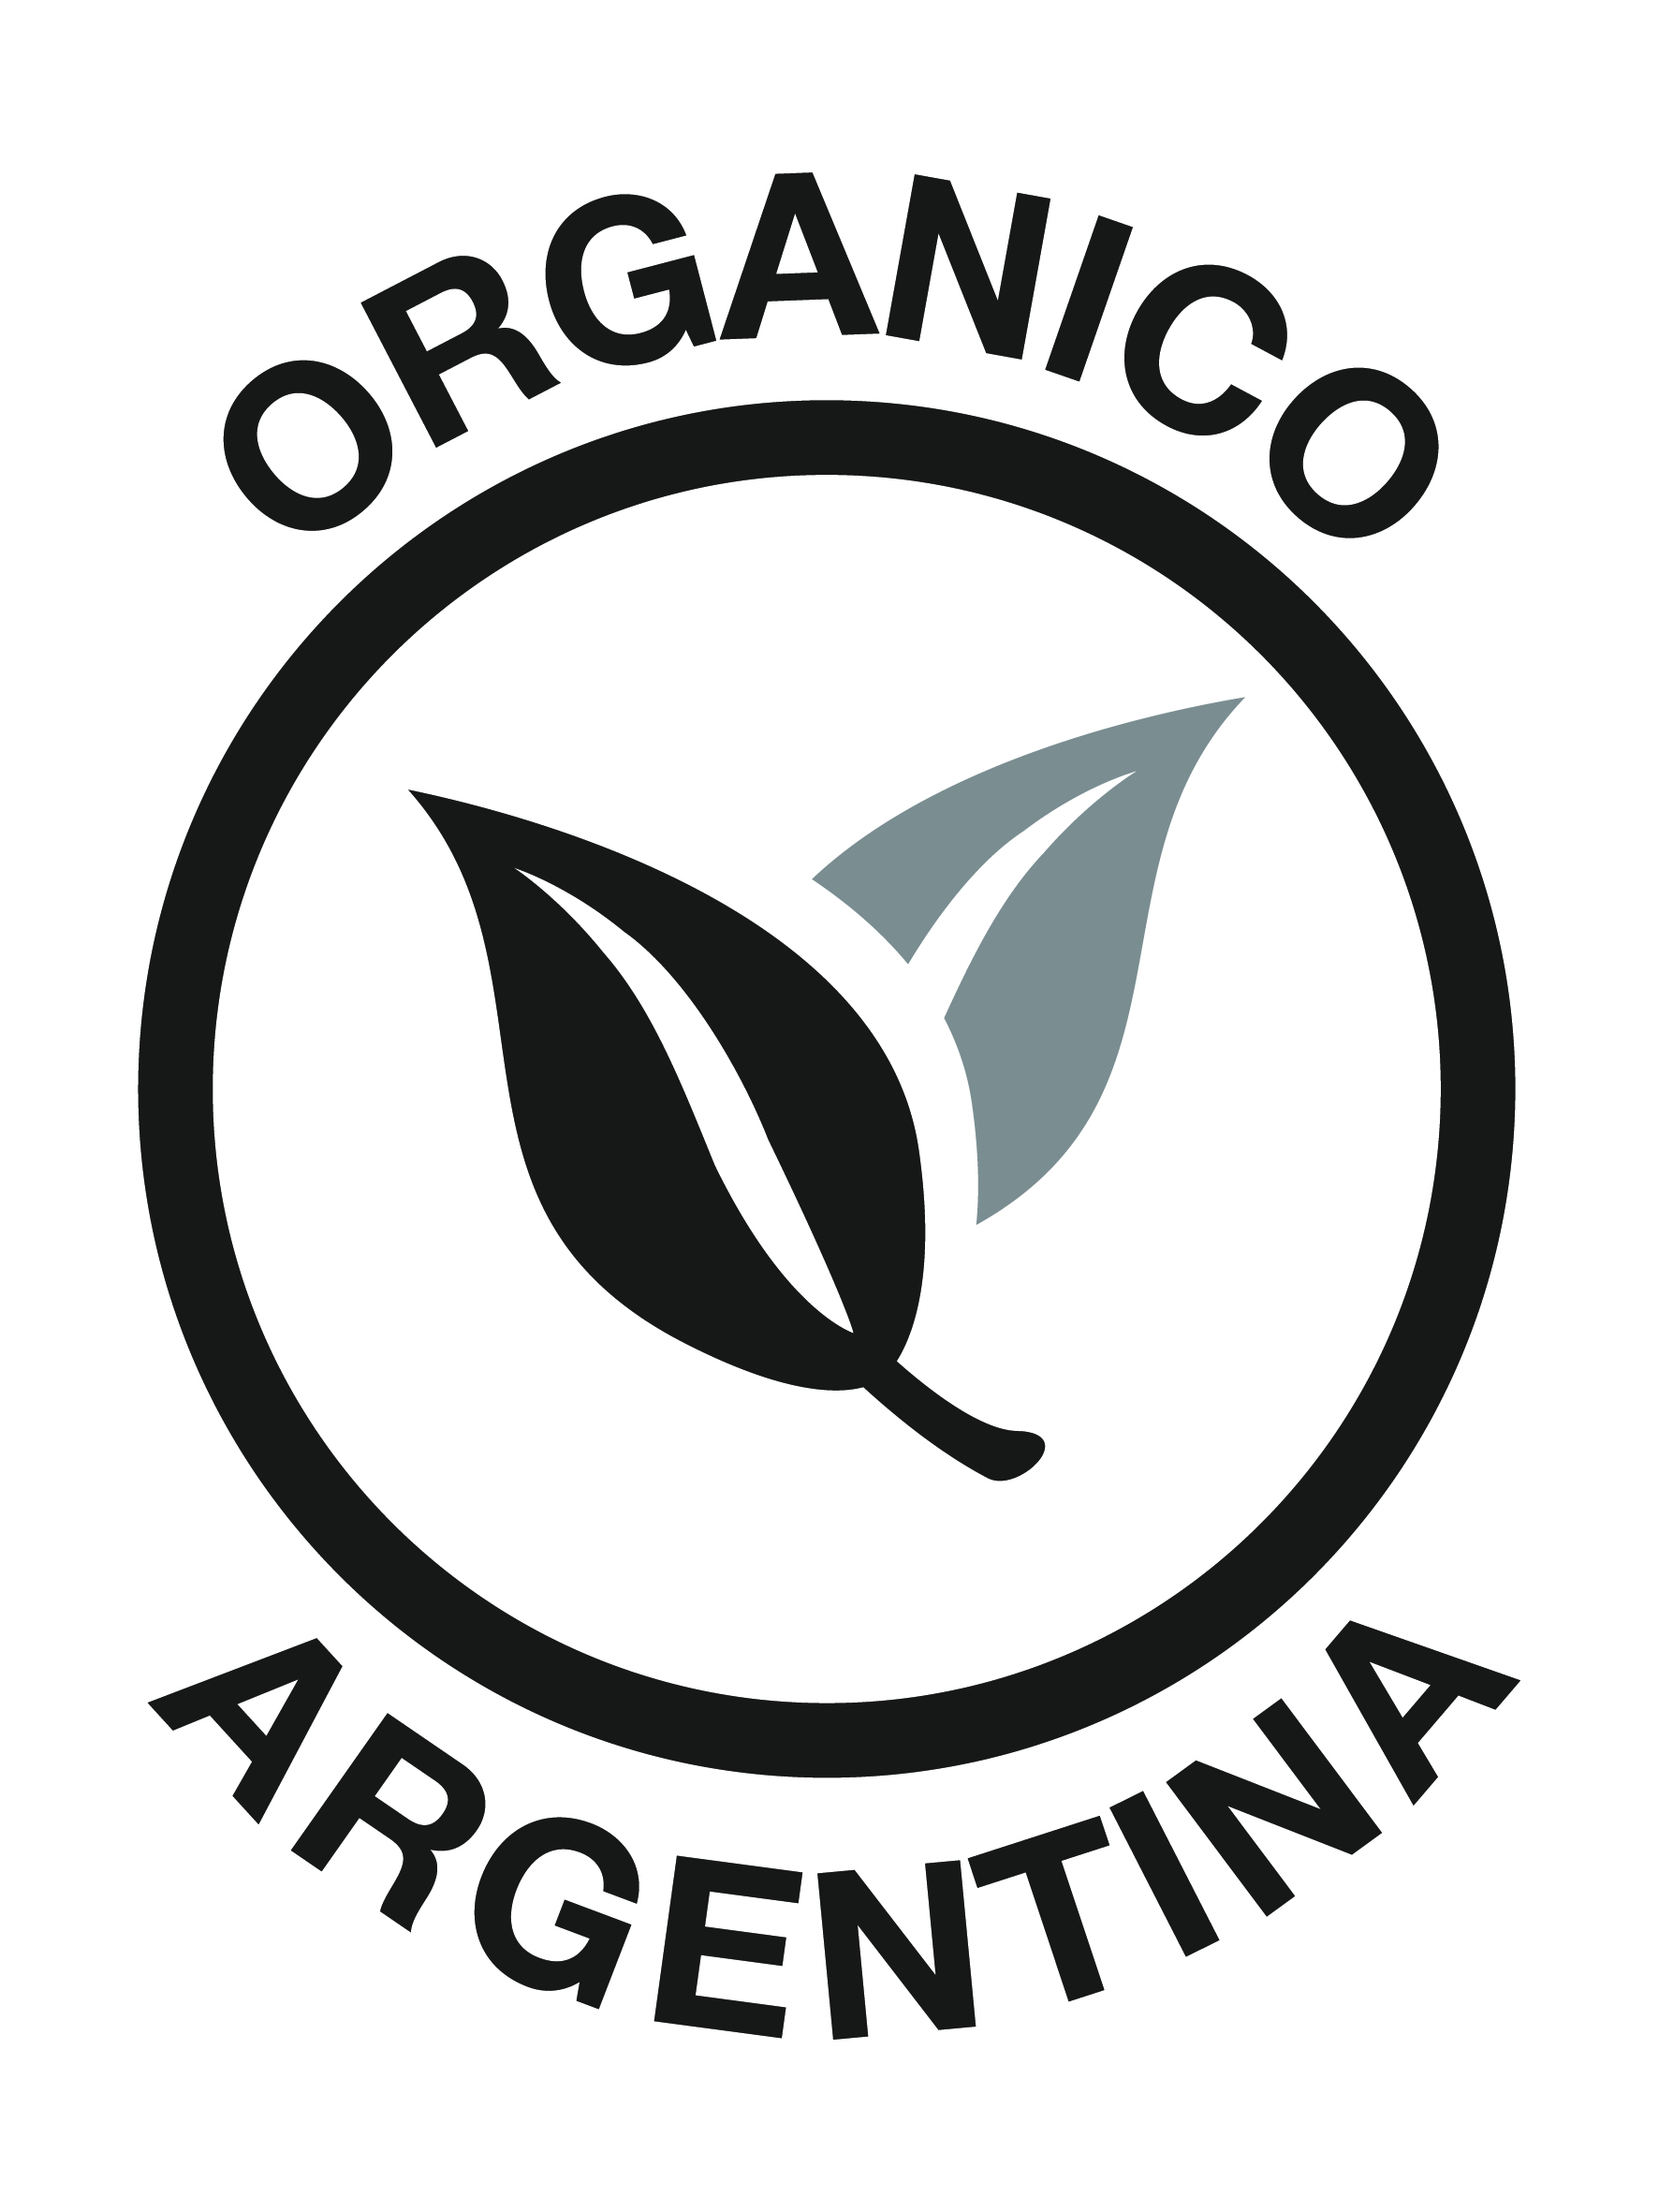 Resultado de imagen para organico argentina logo